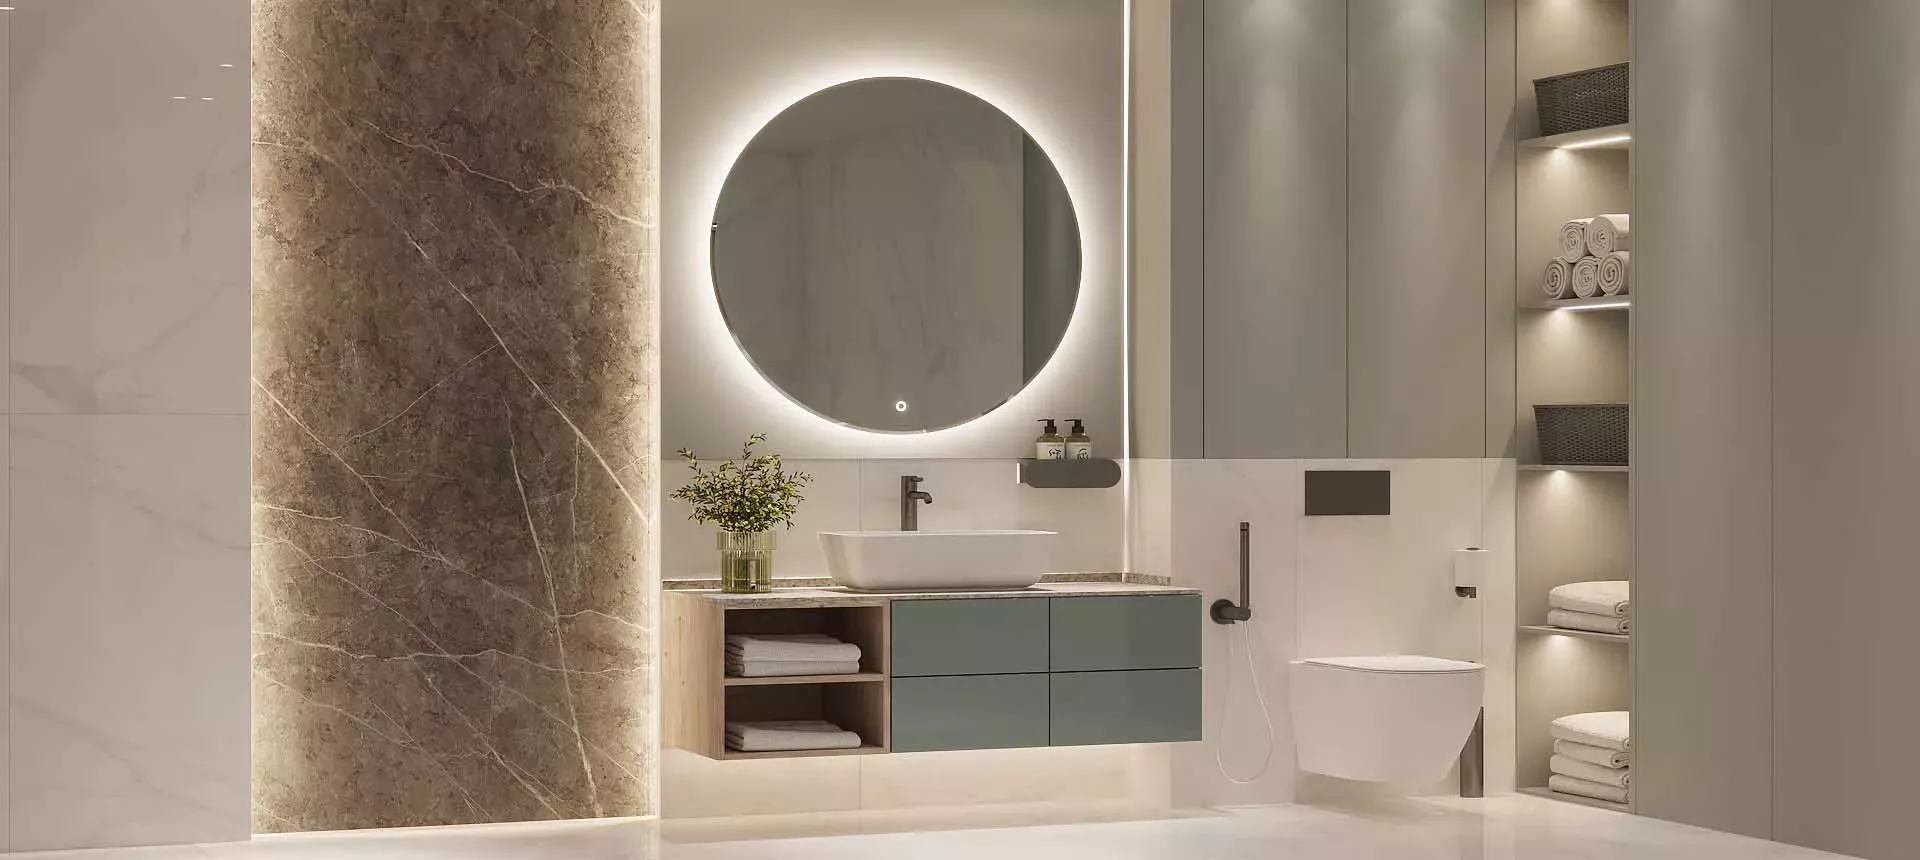 Ванная комната в современной интерпретации: стиль и удобство